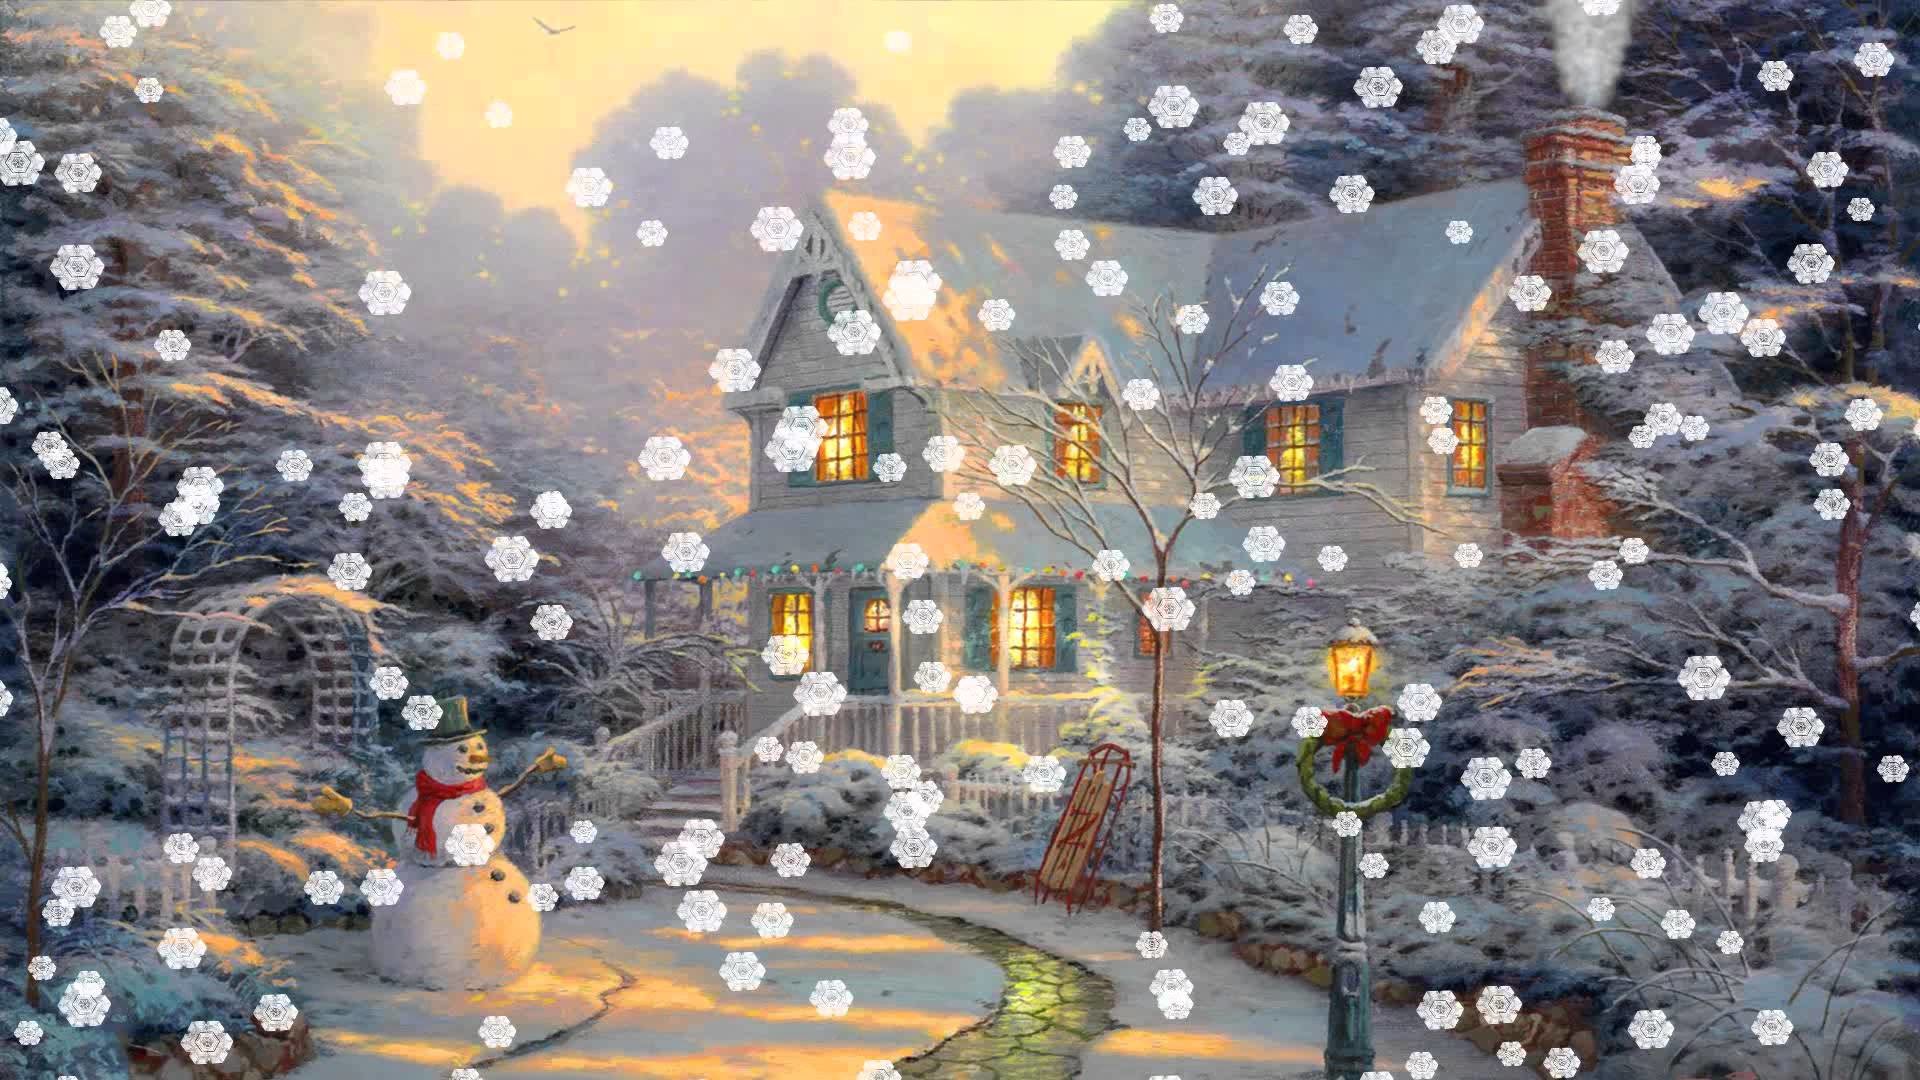  Animated Christmas Wallpapers on WallpaperPlay